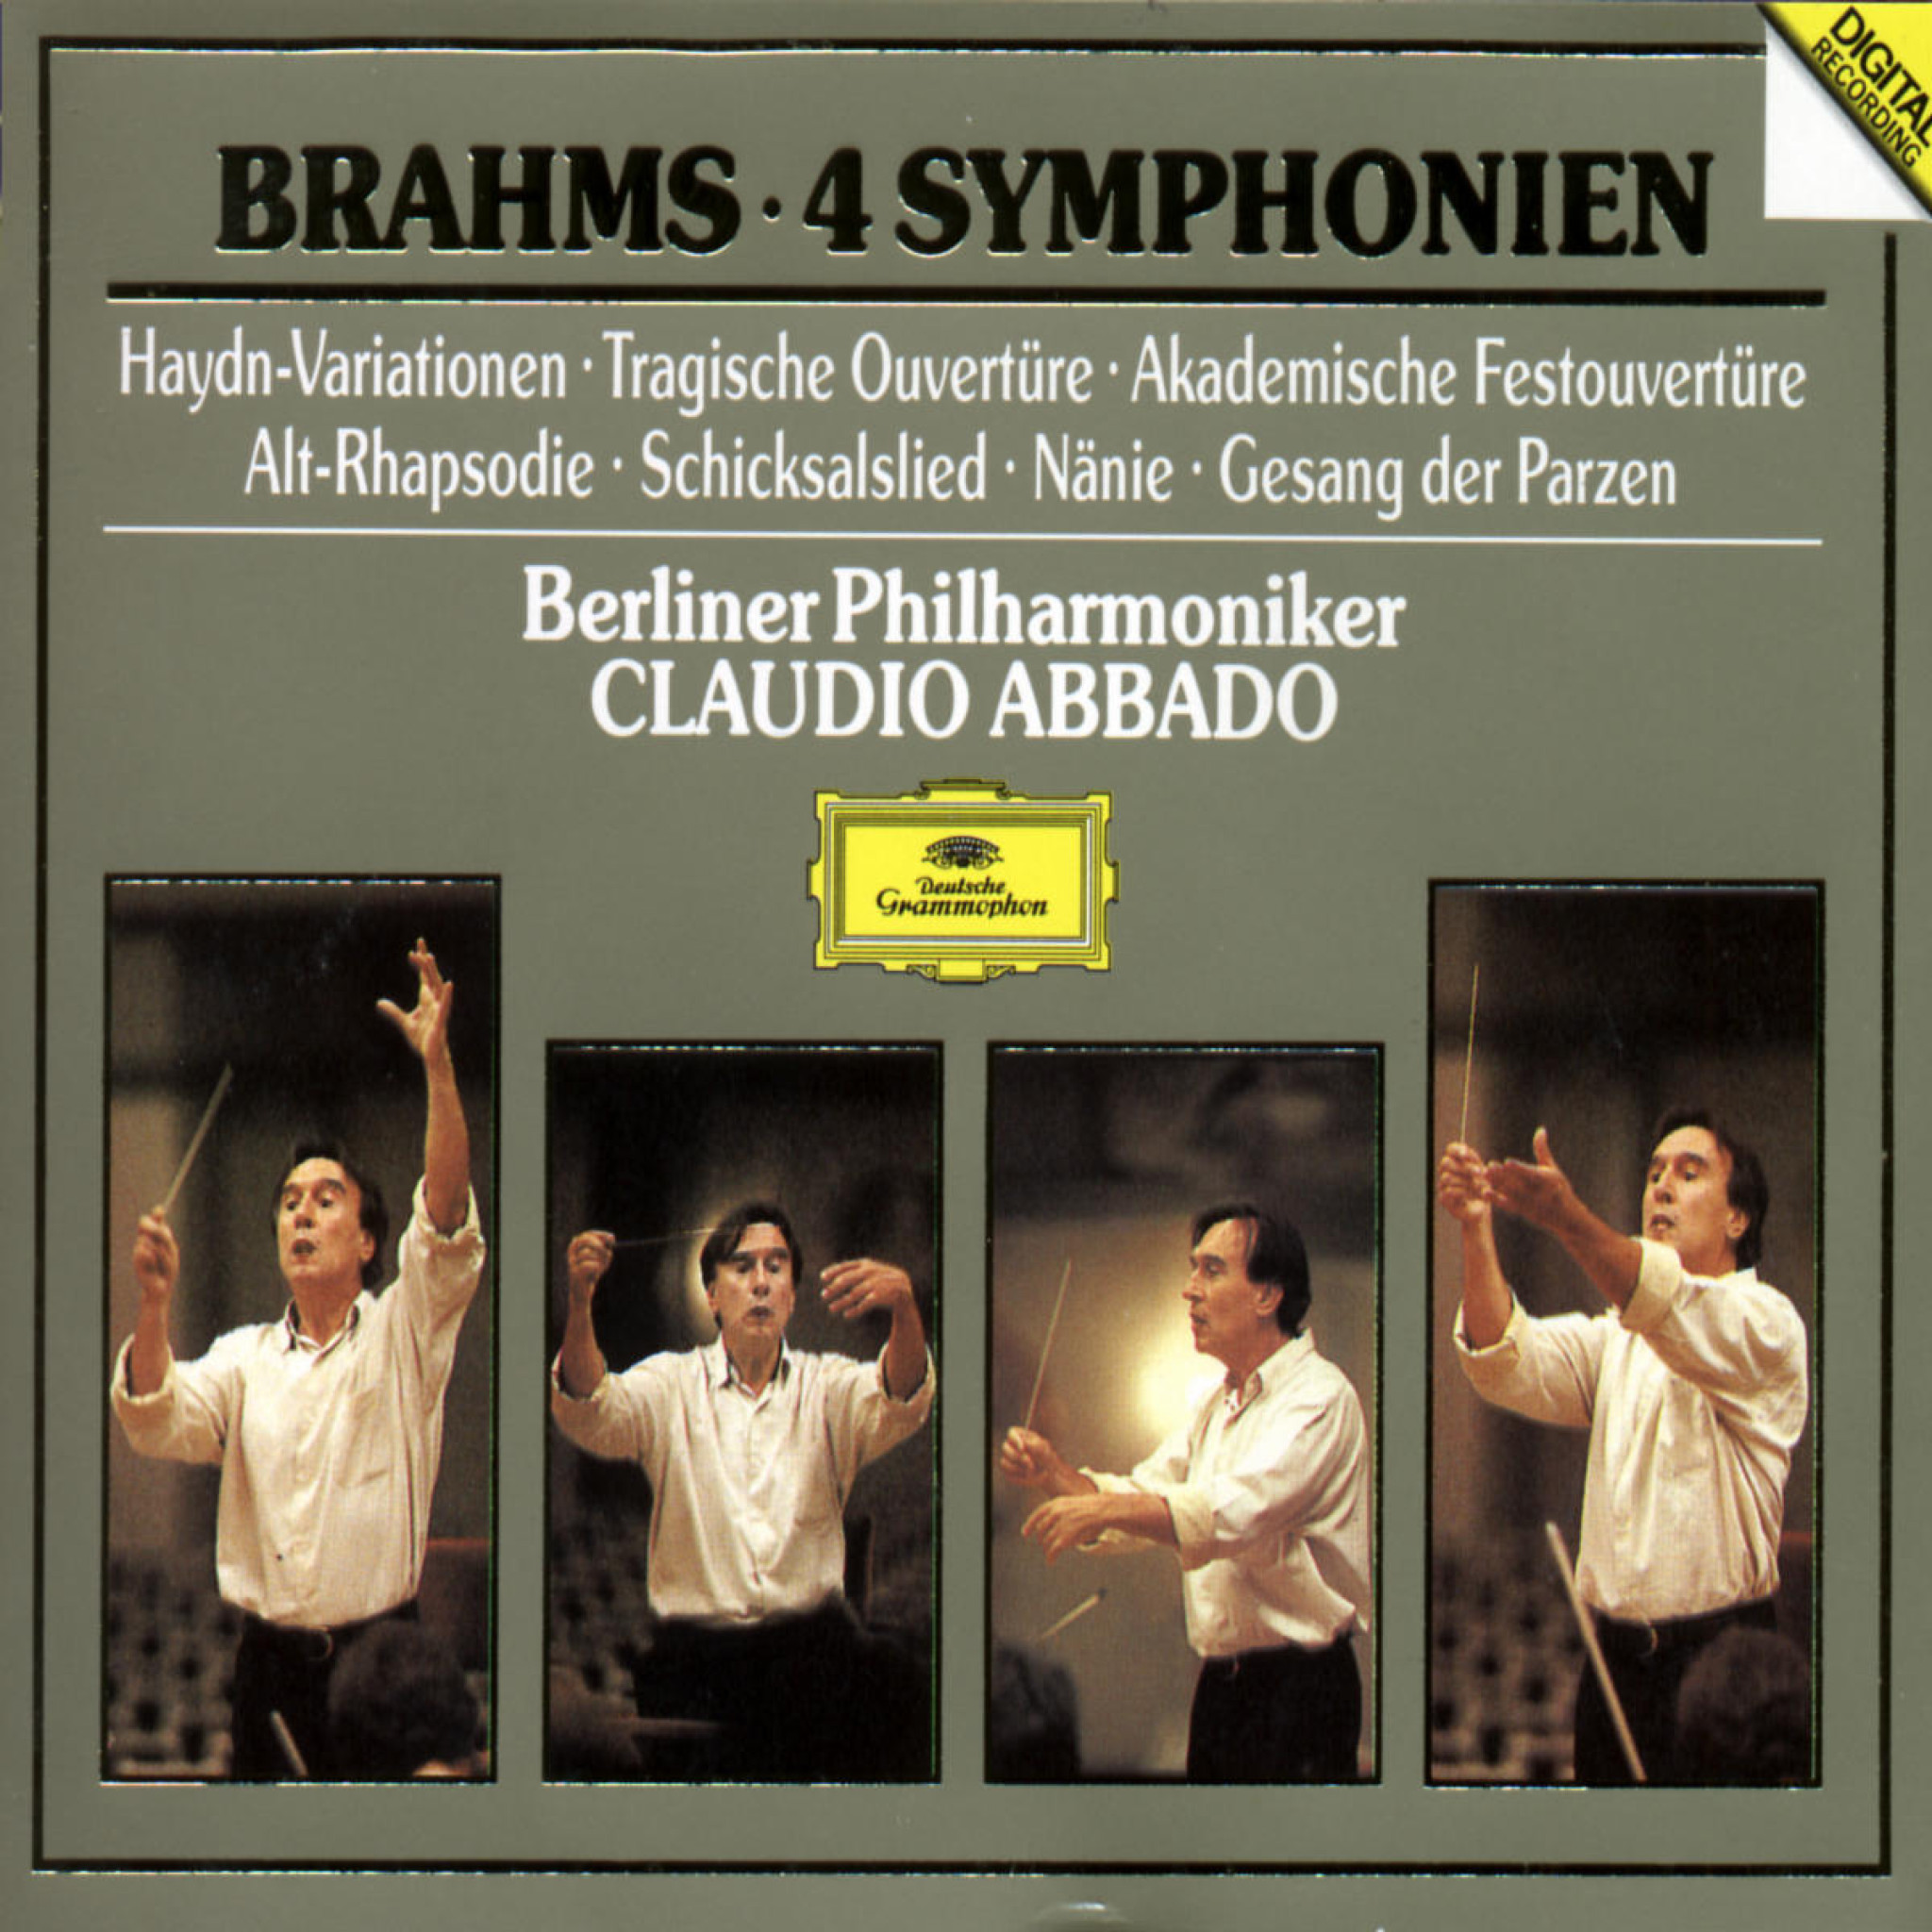 Brahms: The Symphonies/Academic Festival Overture etc. 0028943568326